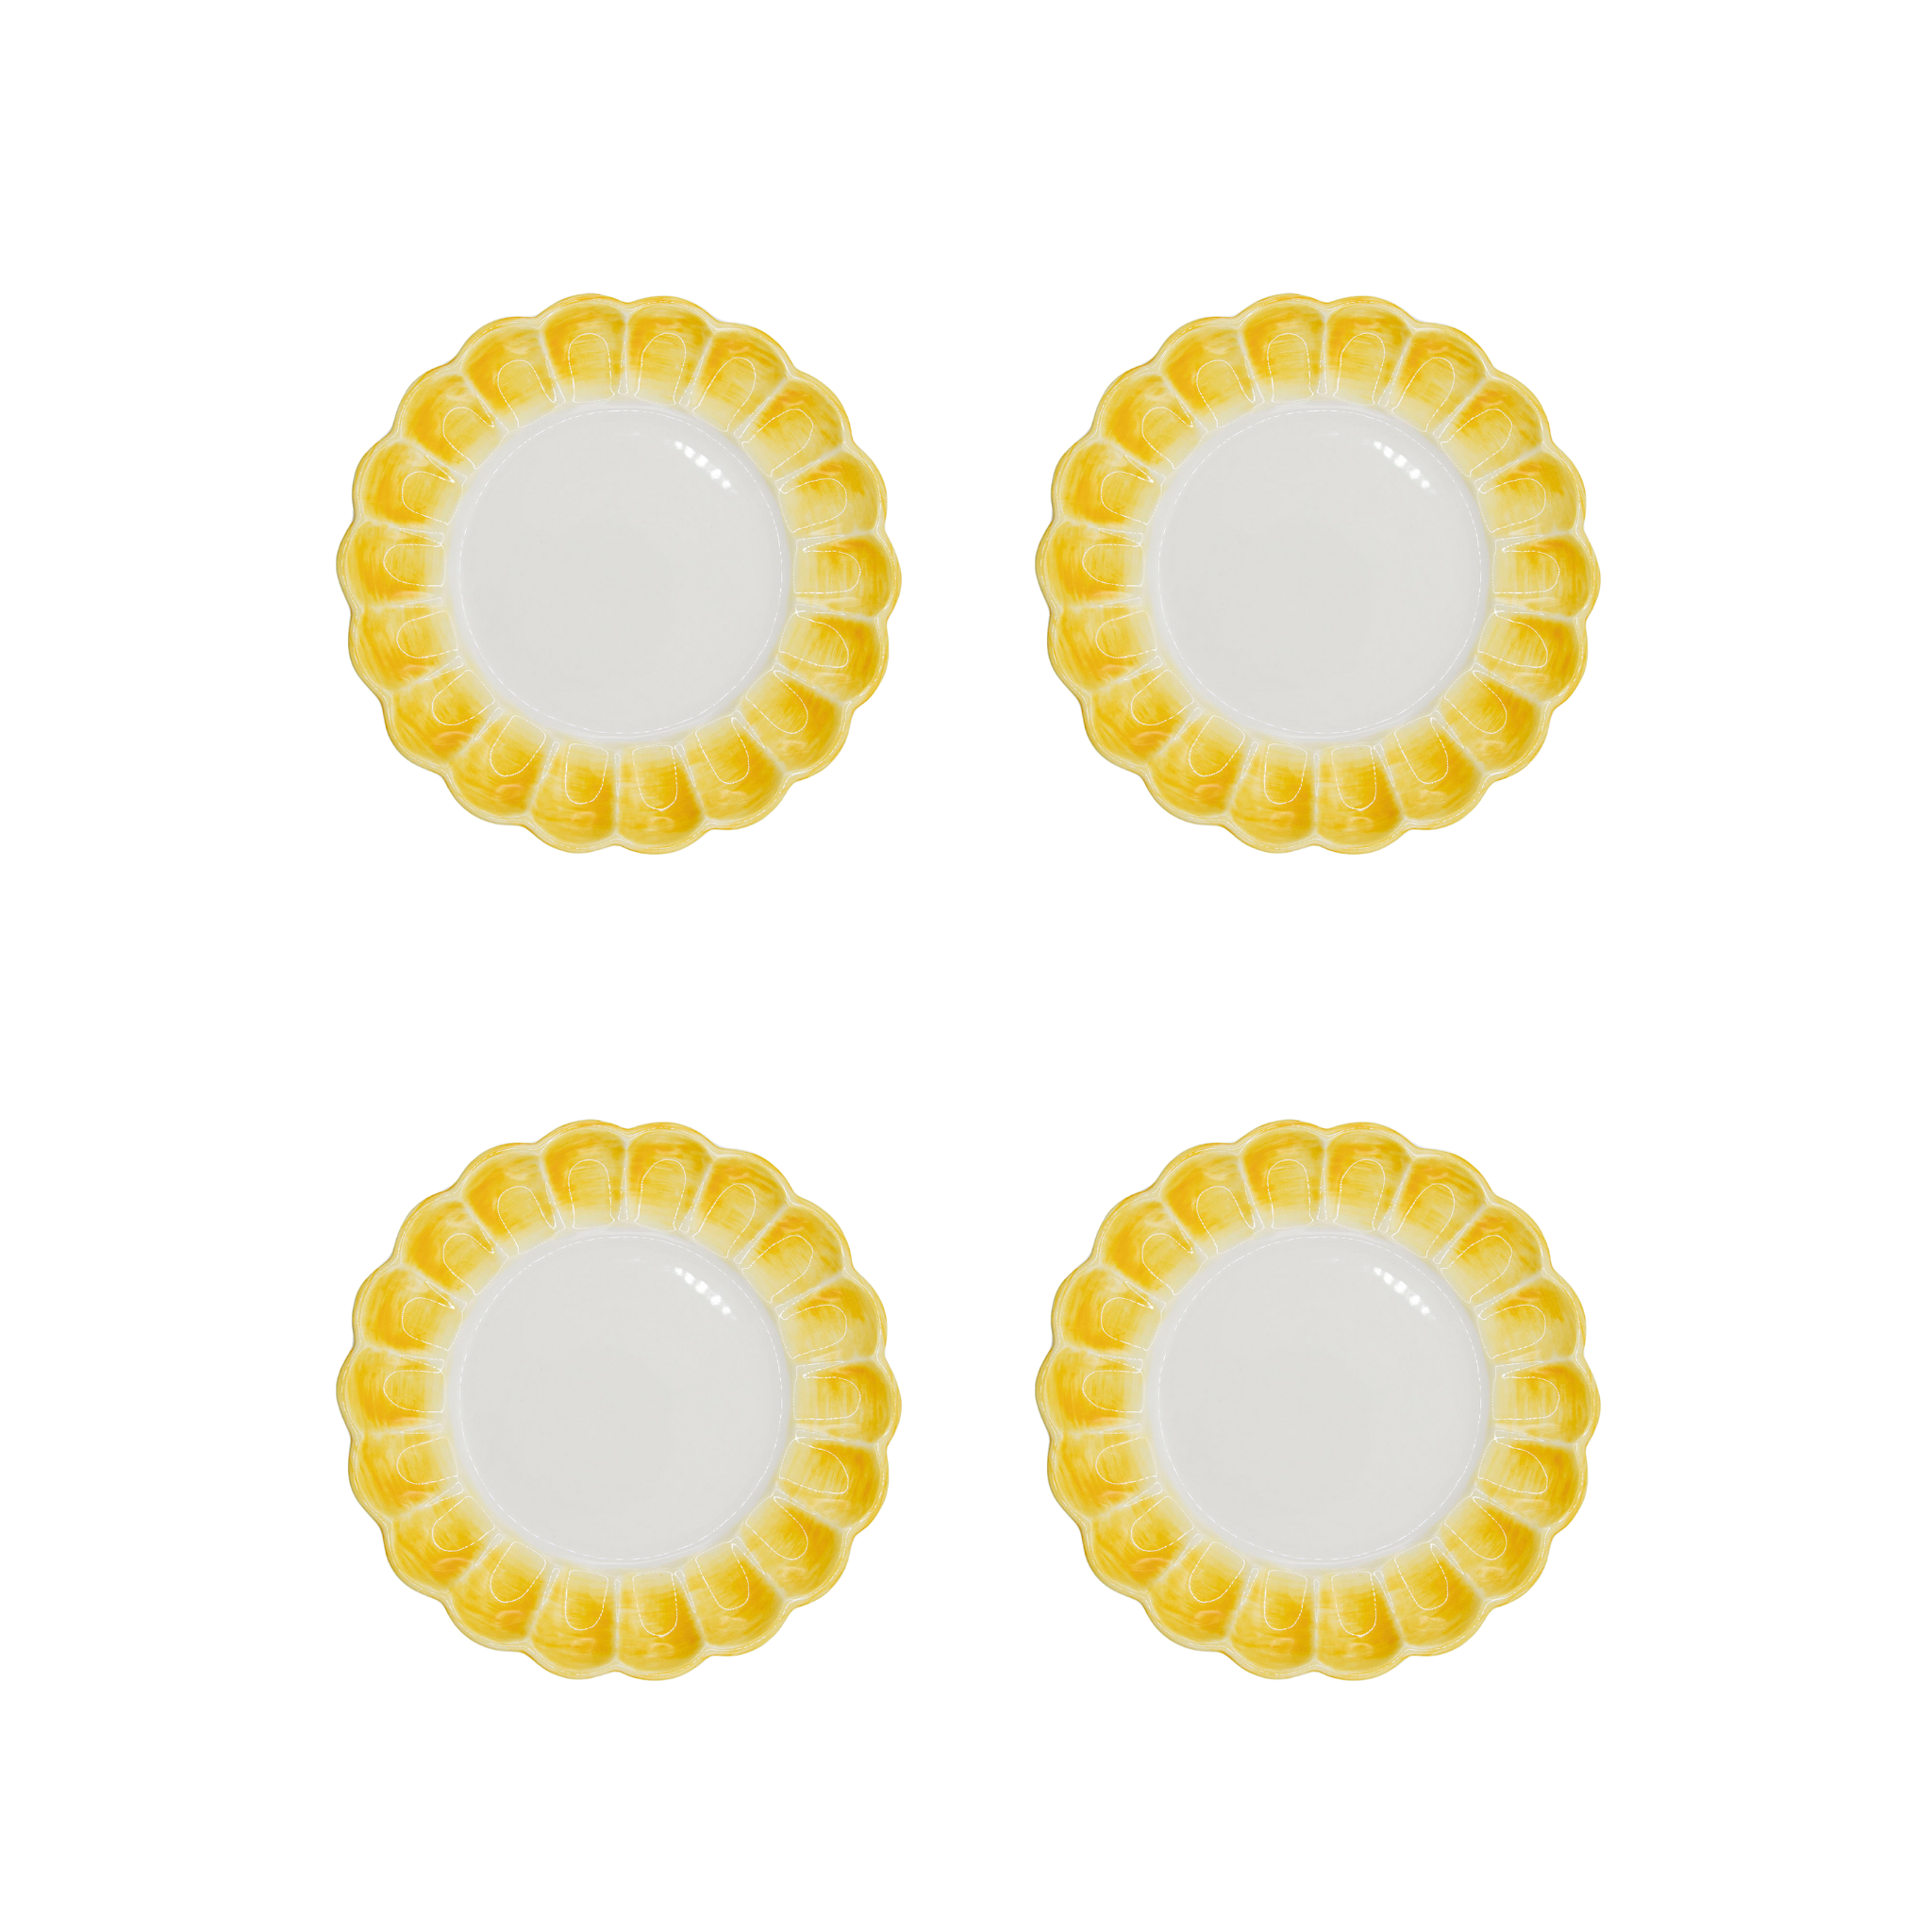 Lido Side Plate, Yellow, Set of 4 - Skye McAlpine Tavola